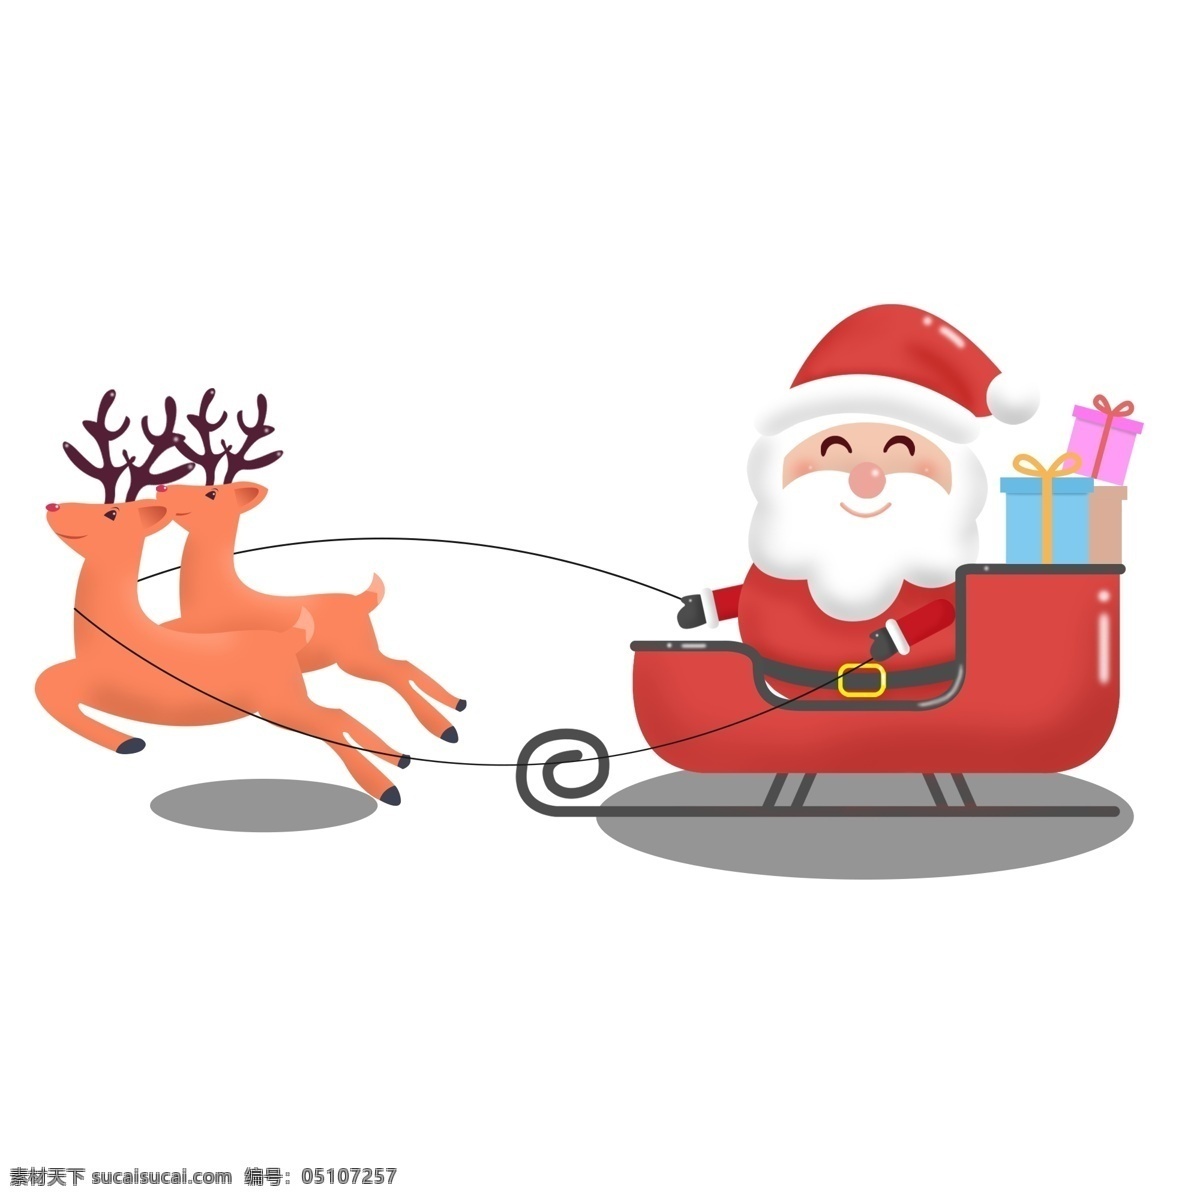 圣诞老人 卡通 可爱 商用 元素 礼物 和蔼 麋鹿 可商用